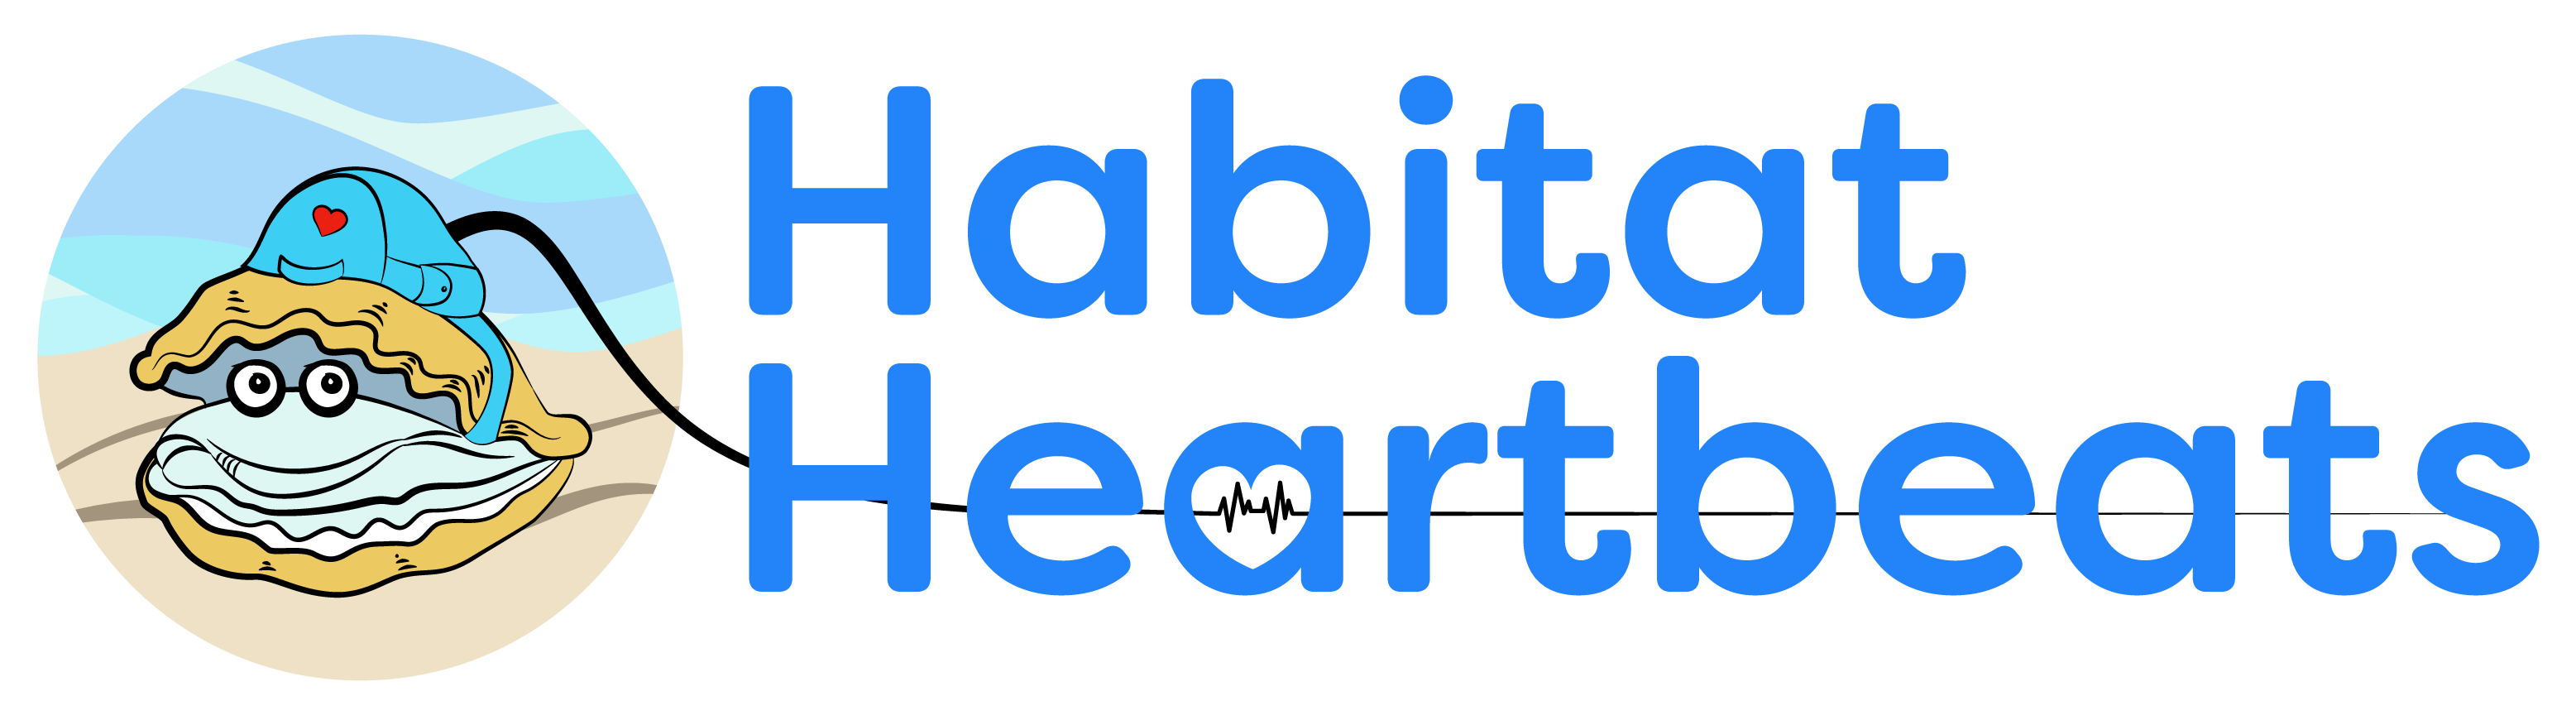 habitat heartbeats logo 